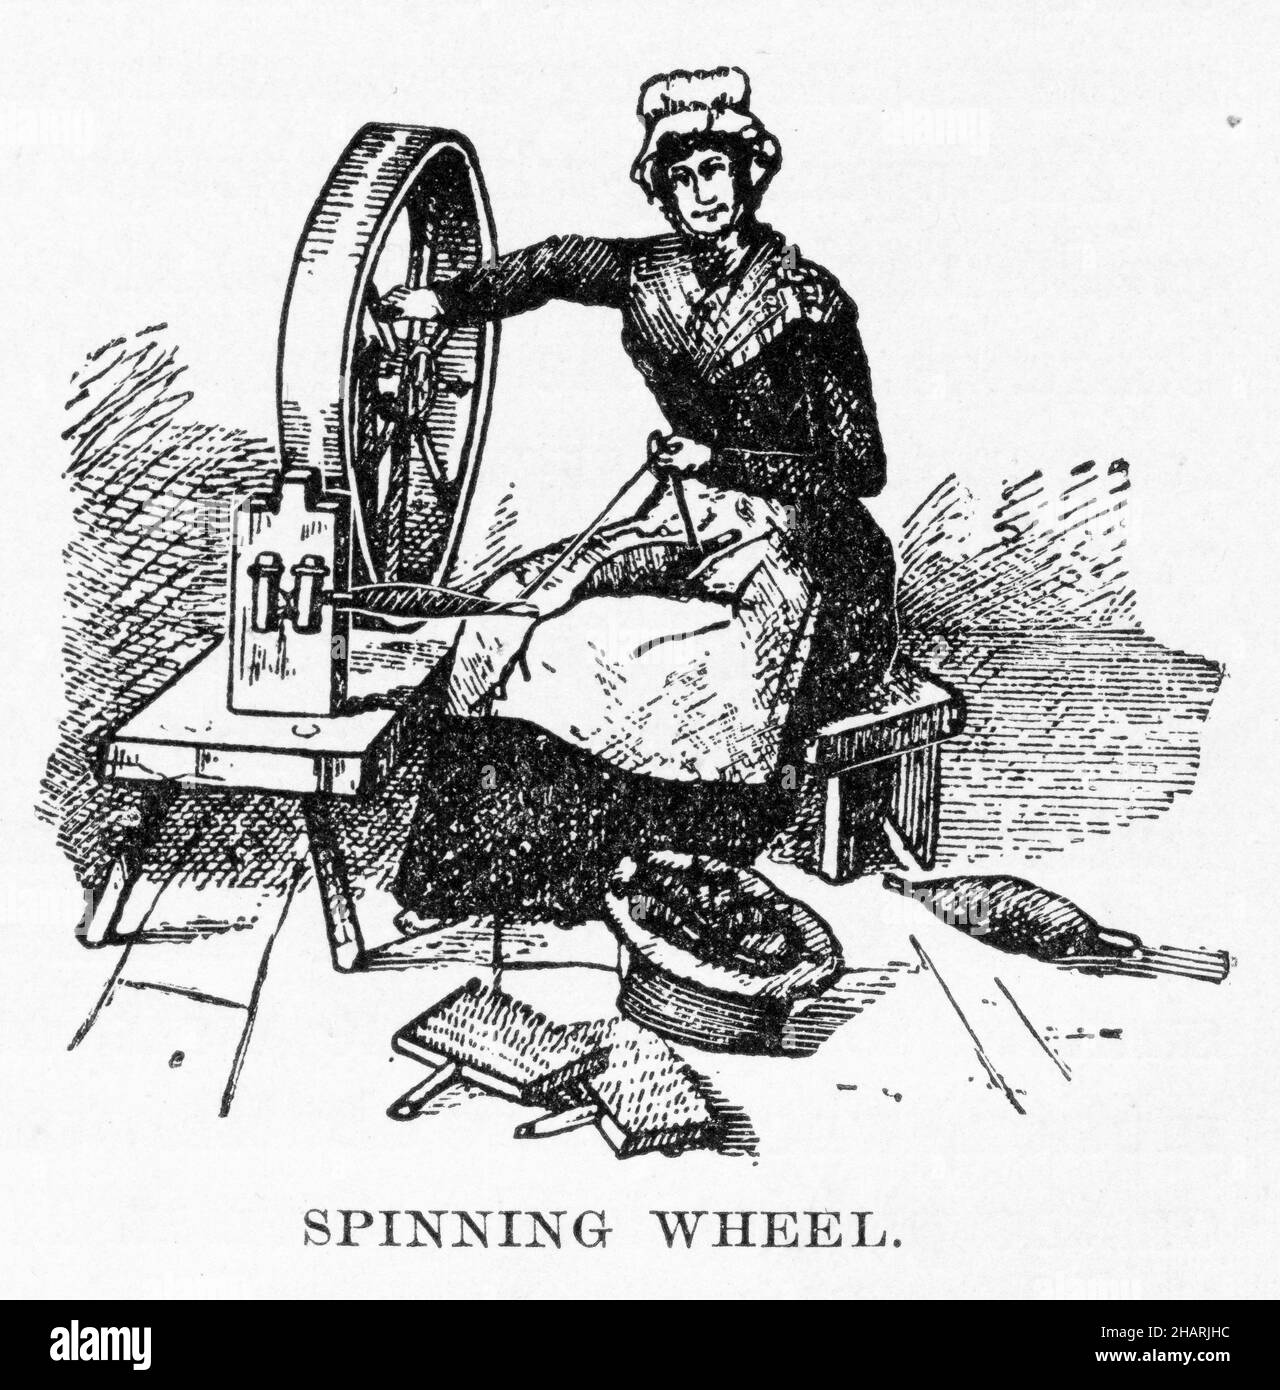 Gravure d'une femme âgée à l'aide d'une roue tournante, publiée vers 1908 Banque D'Images